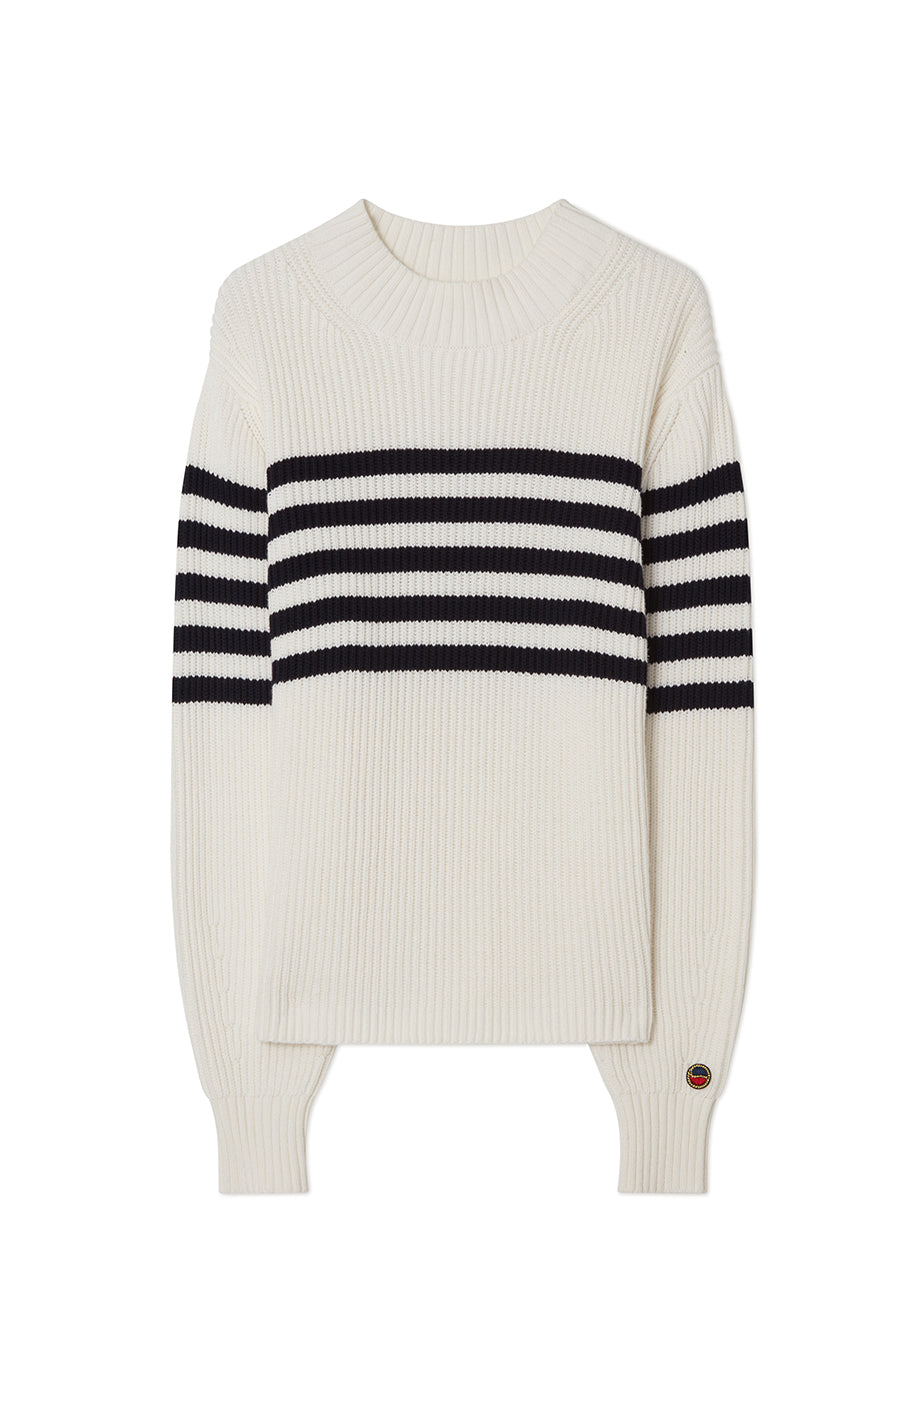 Tamara Striped Sweater Ecru/Marine